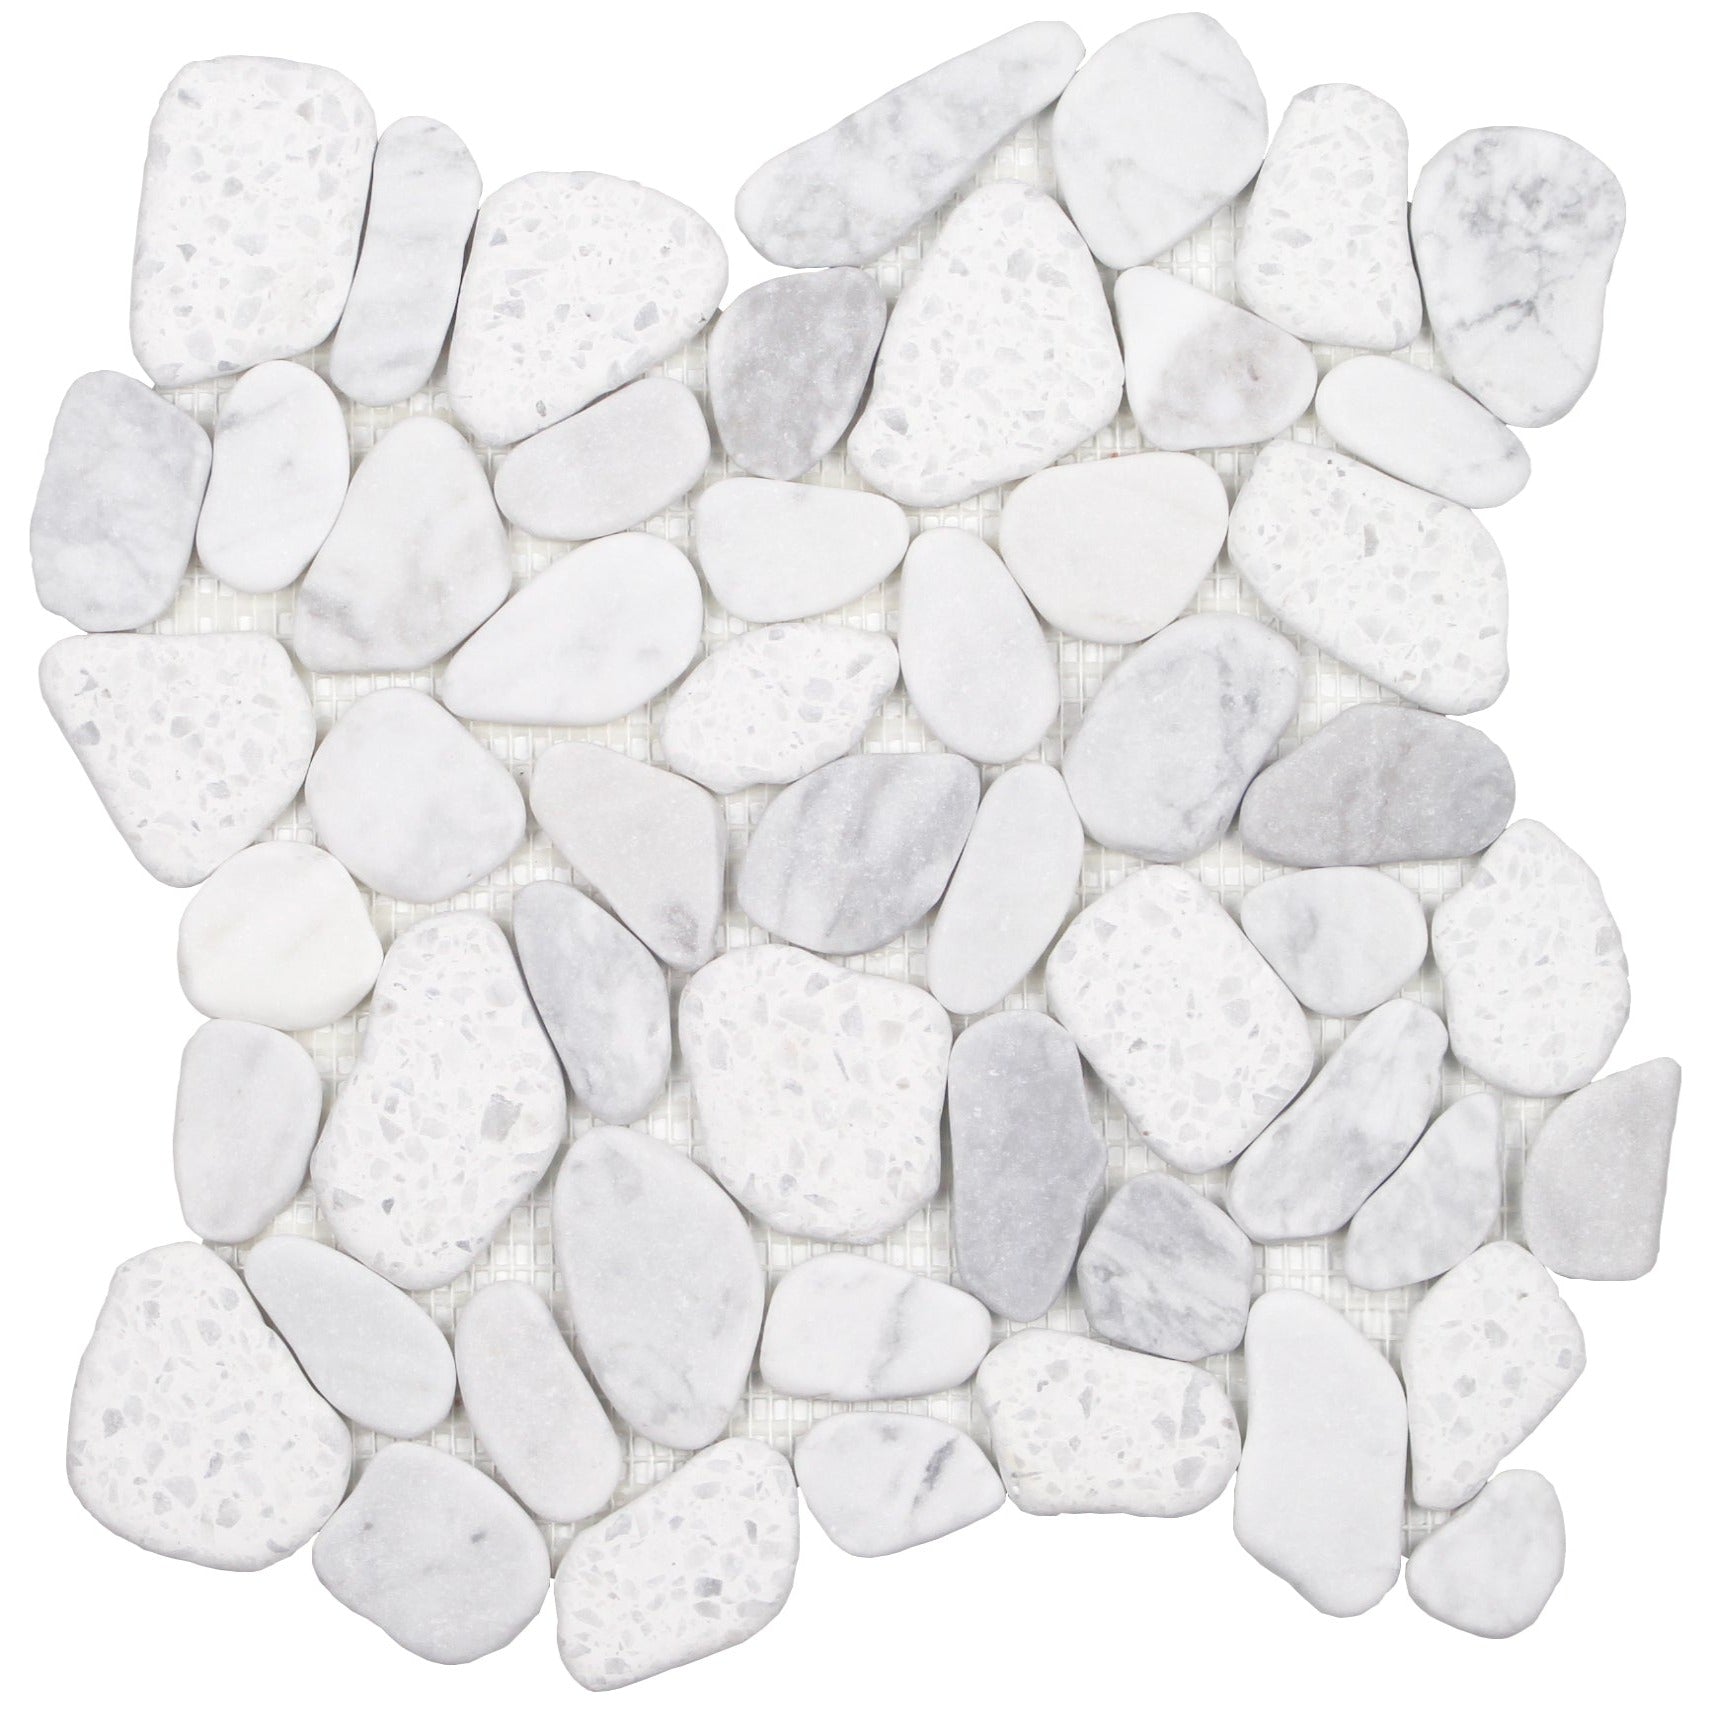 Tesoro - Ocean Stones Collection - Sliced Pebble Mosaic - White Terrazzo Carrara